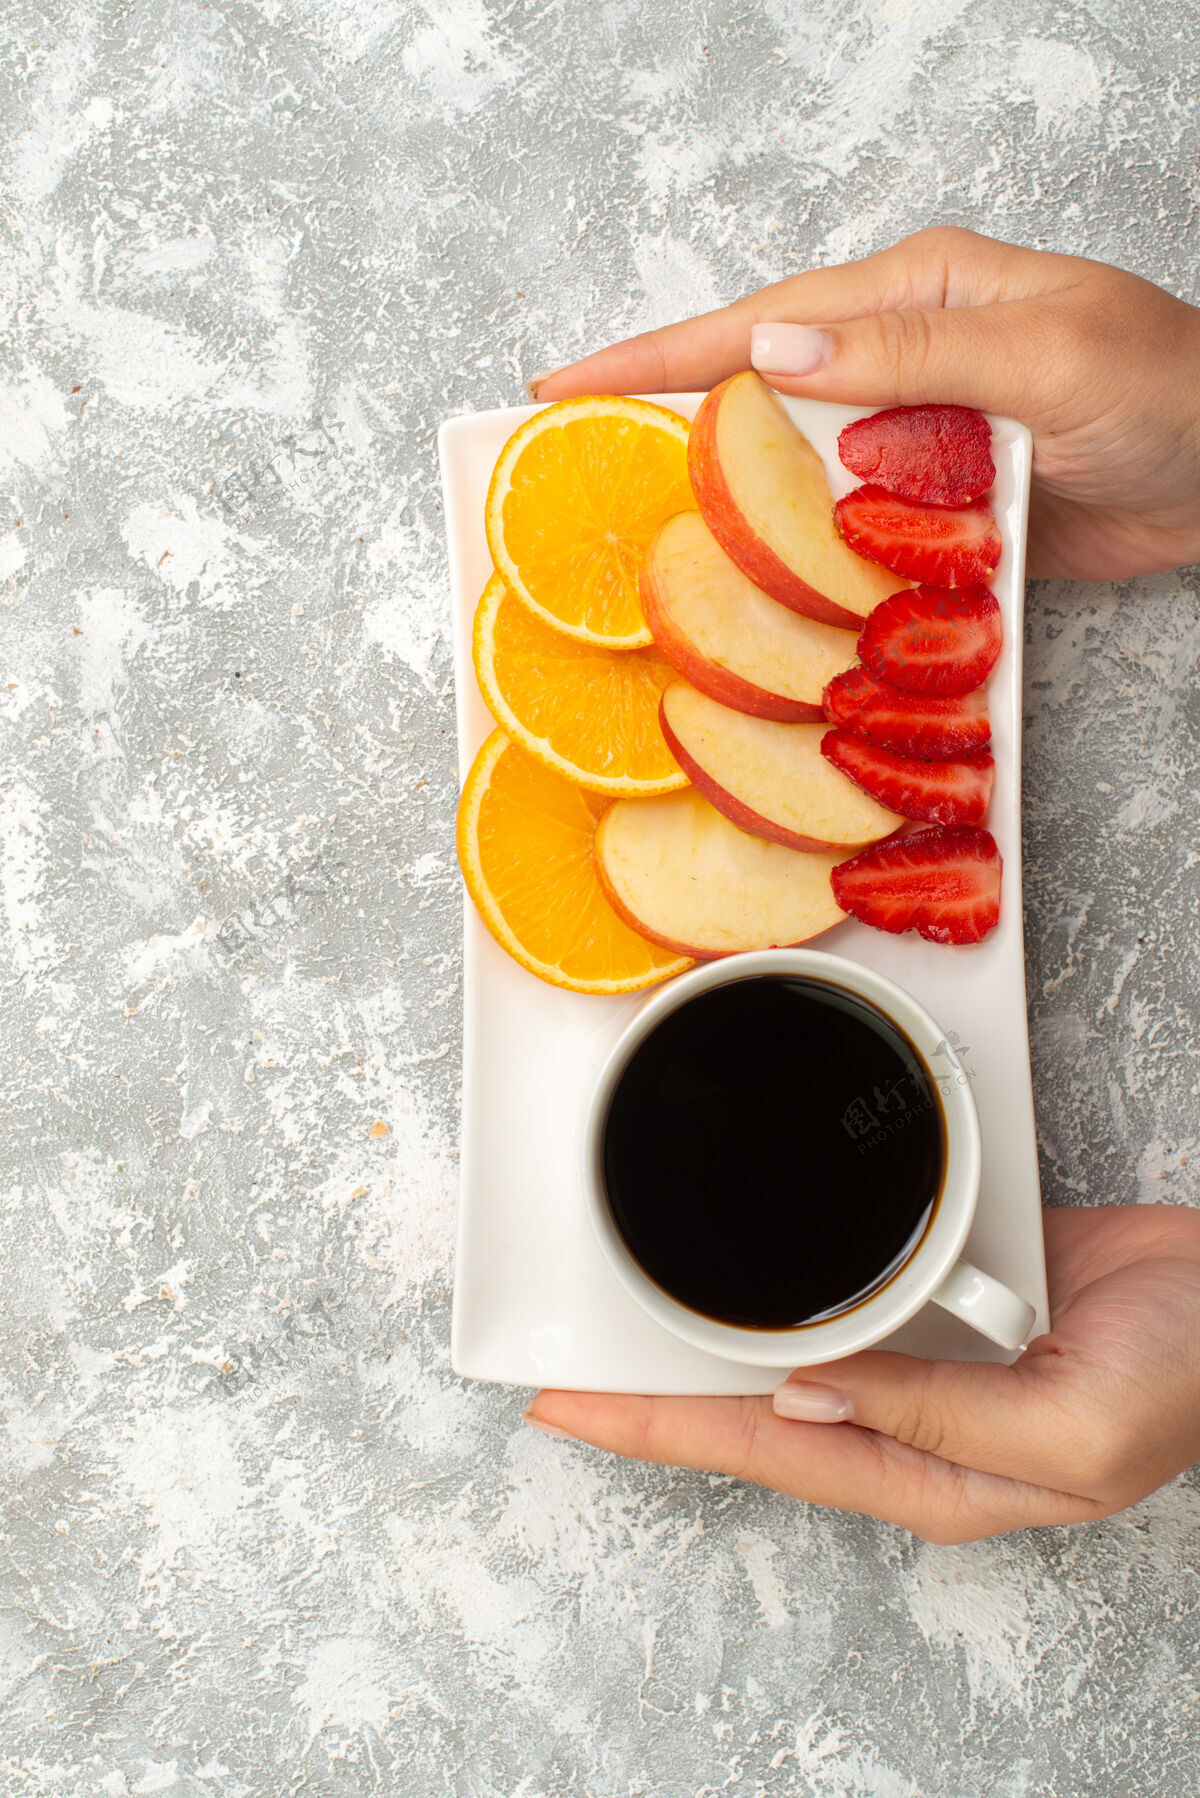 橘子俯瞰一杯咖啡 配切片苹果 橙子和草莓 背景为白色水果 成熟新鲜醇厚杯子背景零食